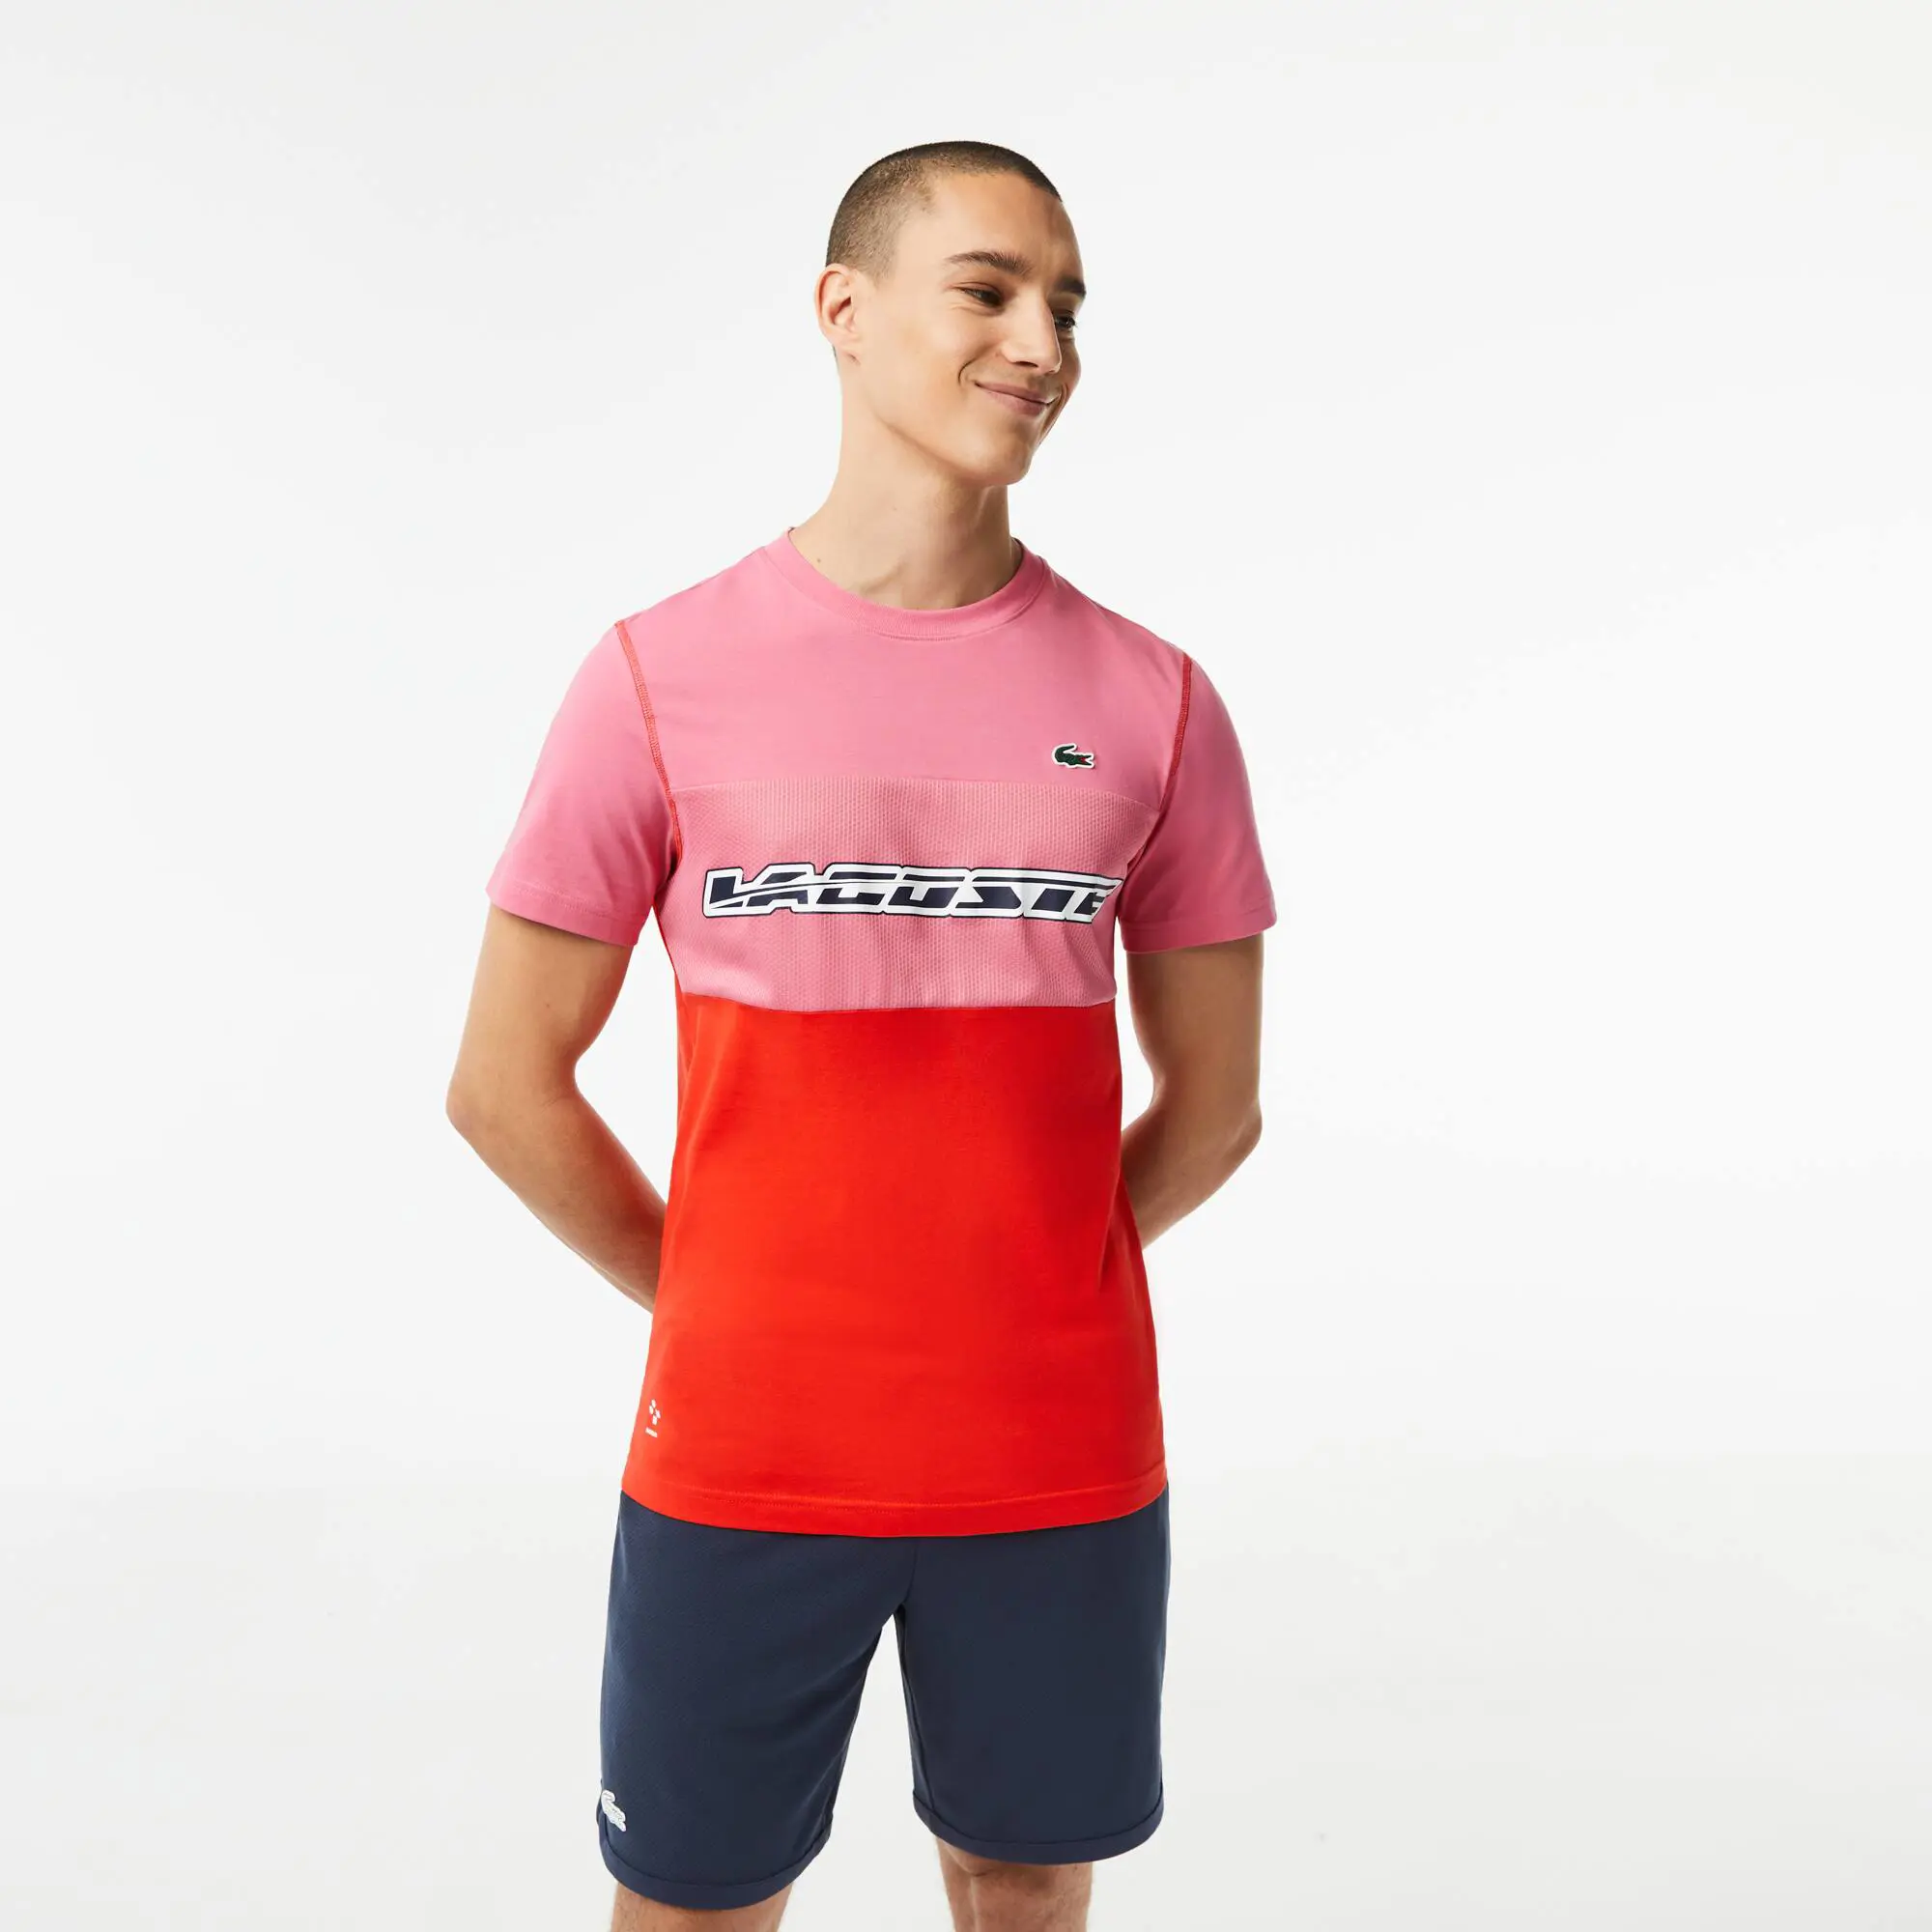 Lacoste T-shirt homme Lacoste Tennis x Daniil Medvedev en jersey. 1